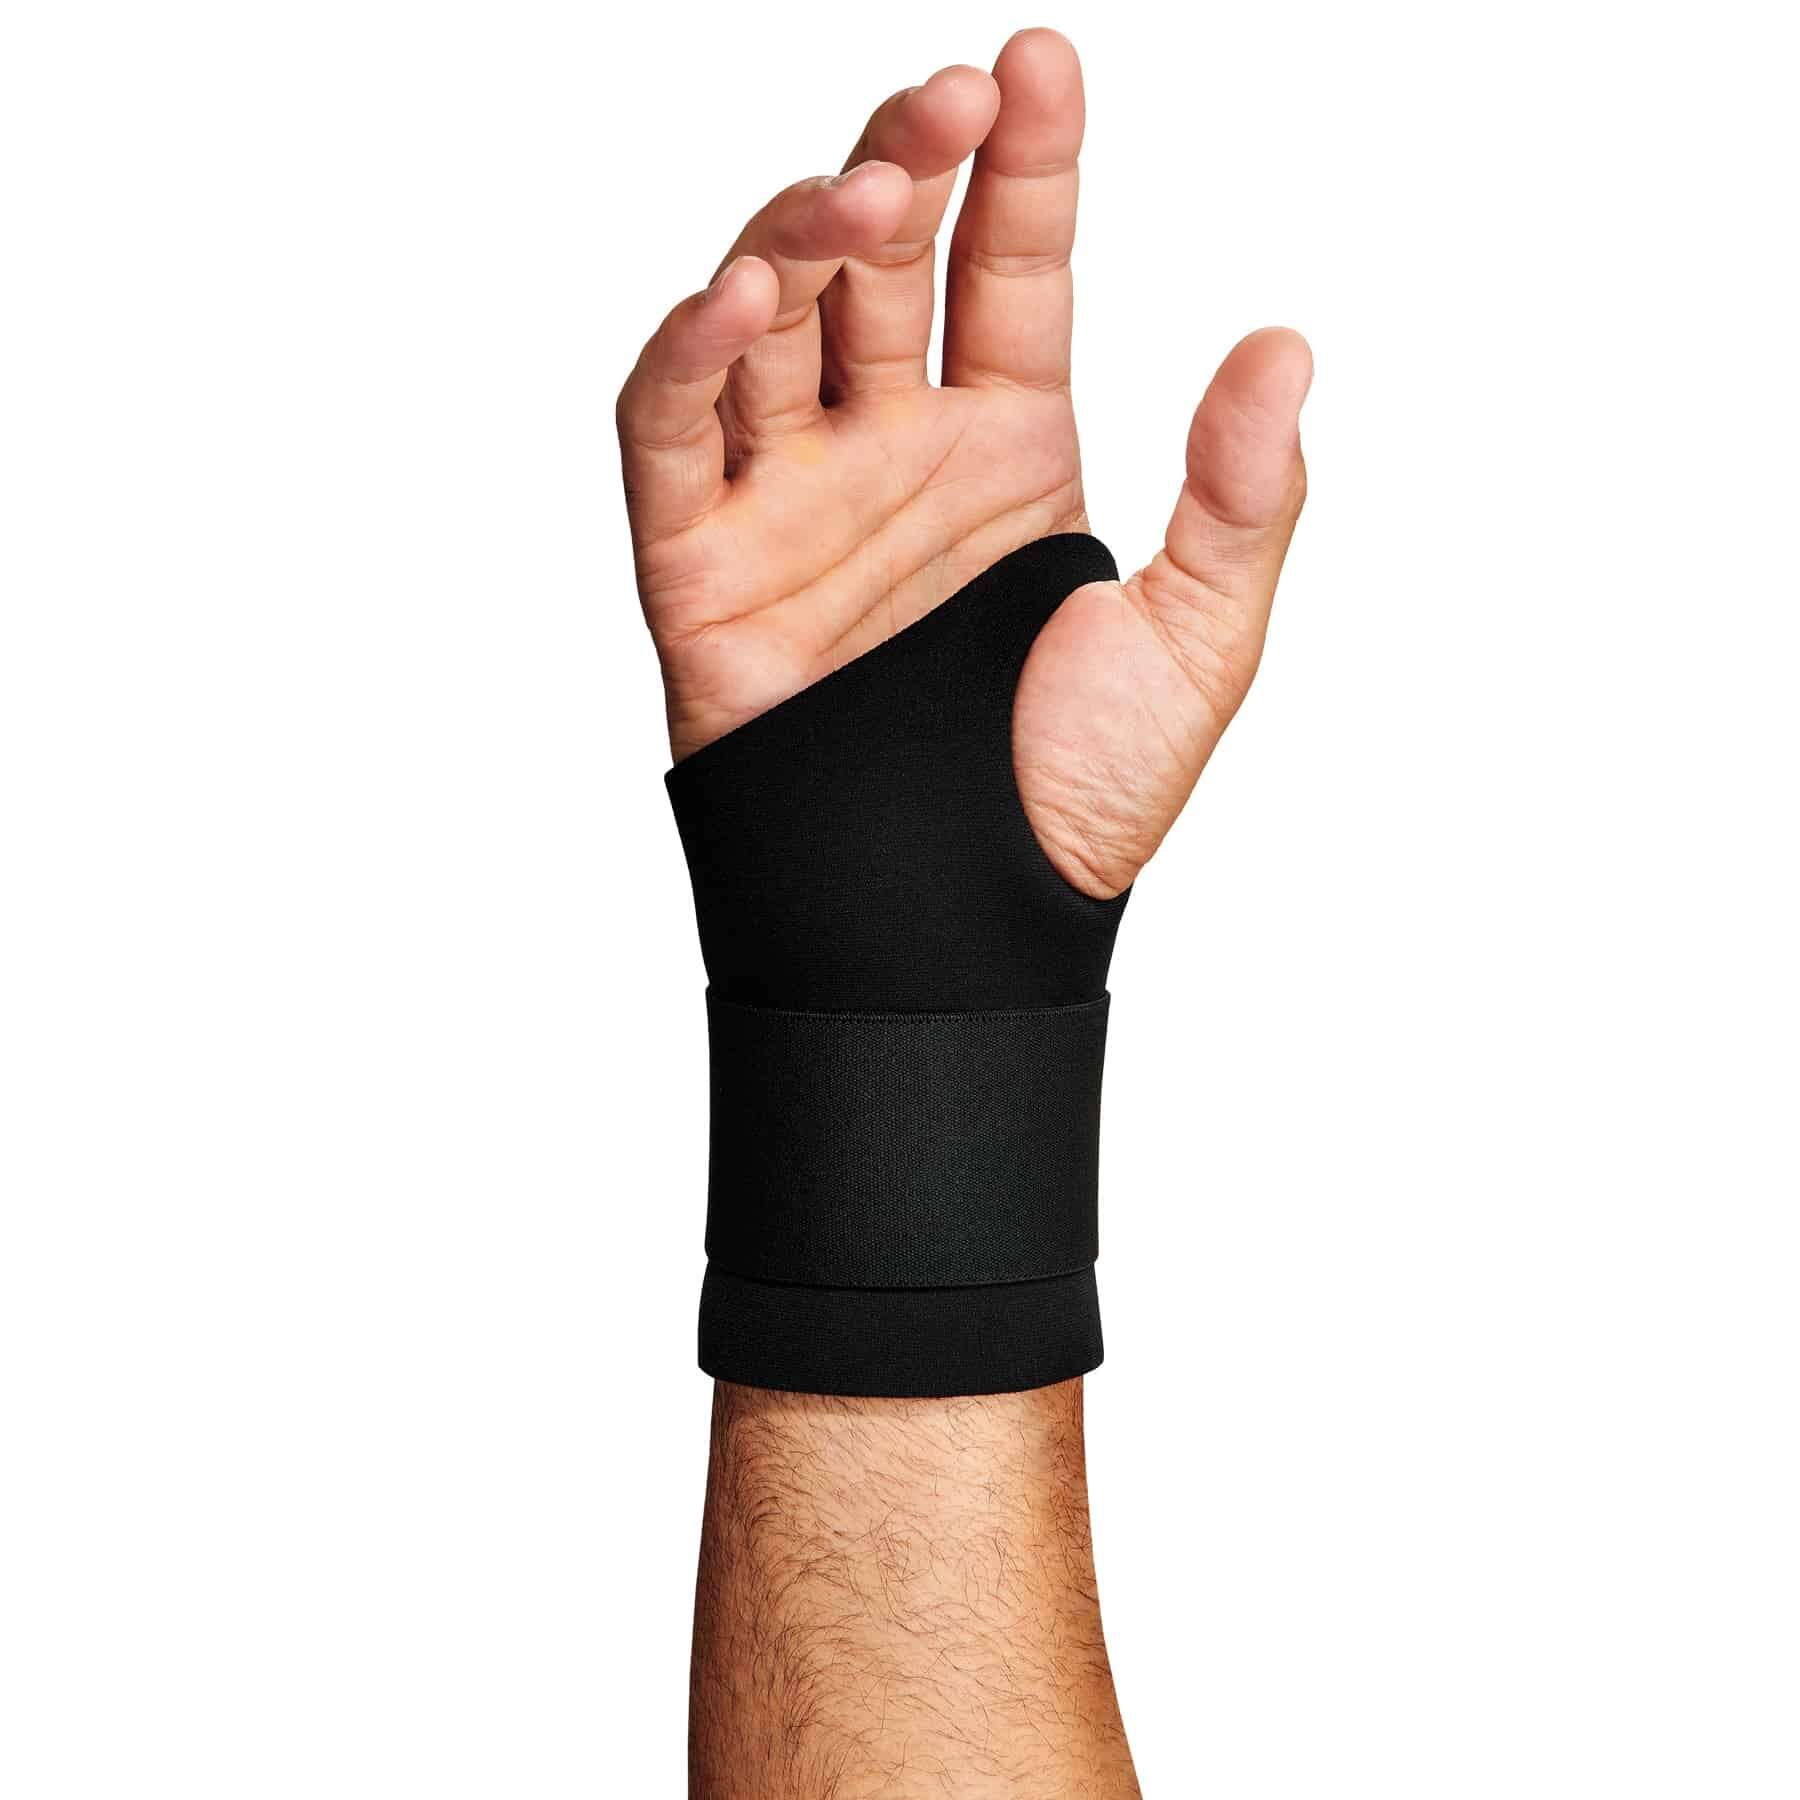 Ambidextrous Single Strap Wrist Support - Wrist Supports